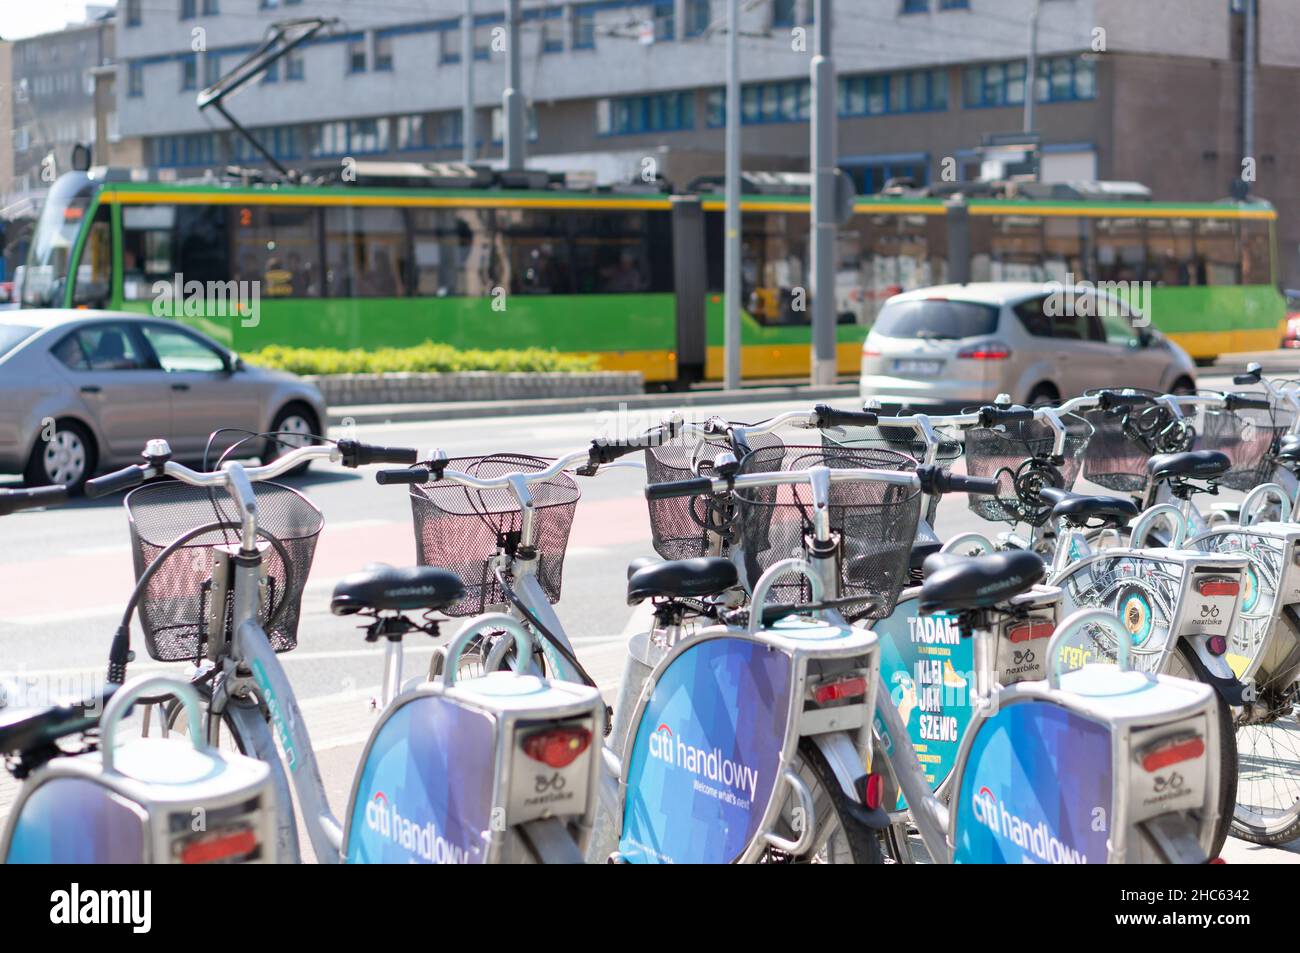 La rangée de vélos de marque Nextbike est verrouillée sur des poteaux sur un trottoir dans le centre-ville, Poznan Banque D'Images